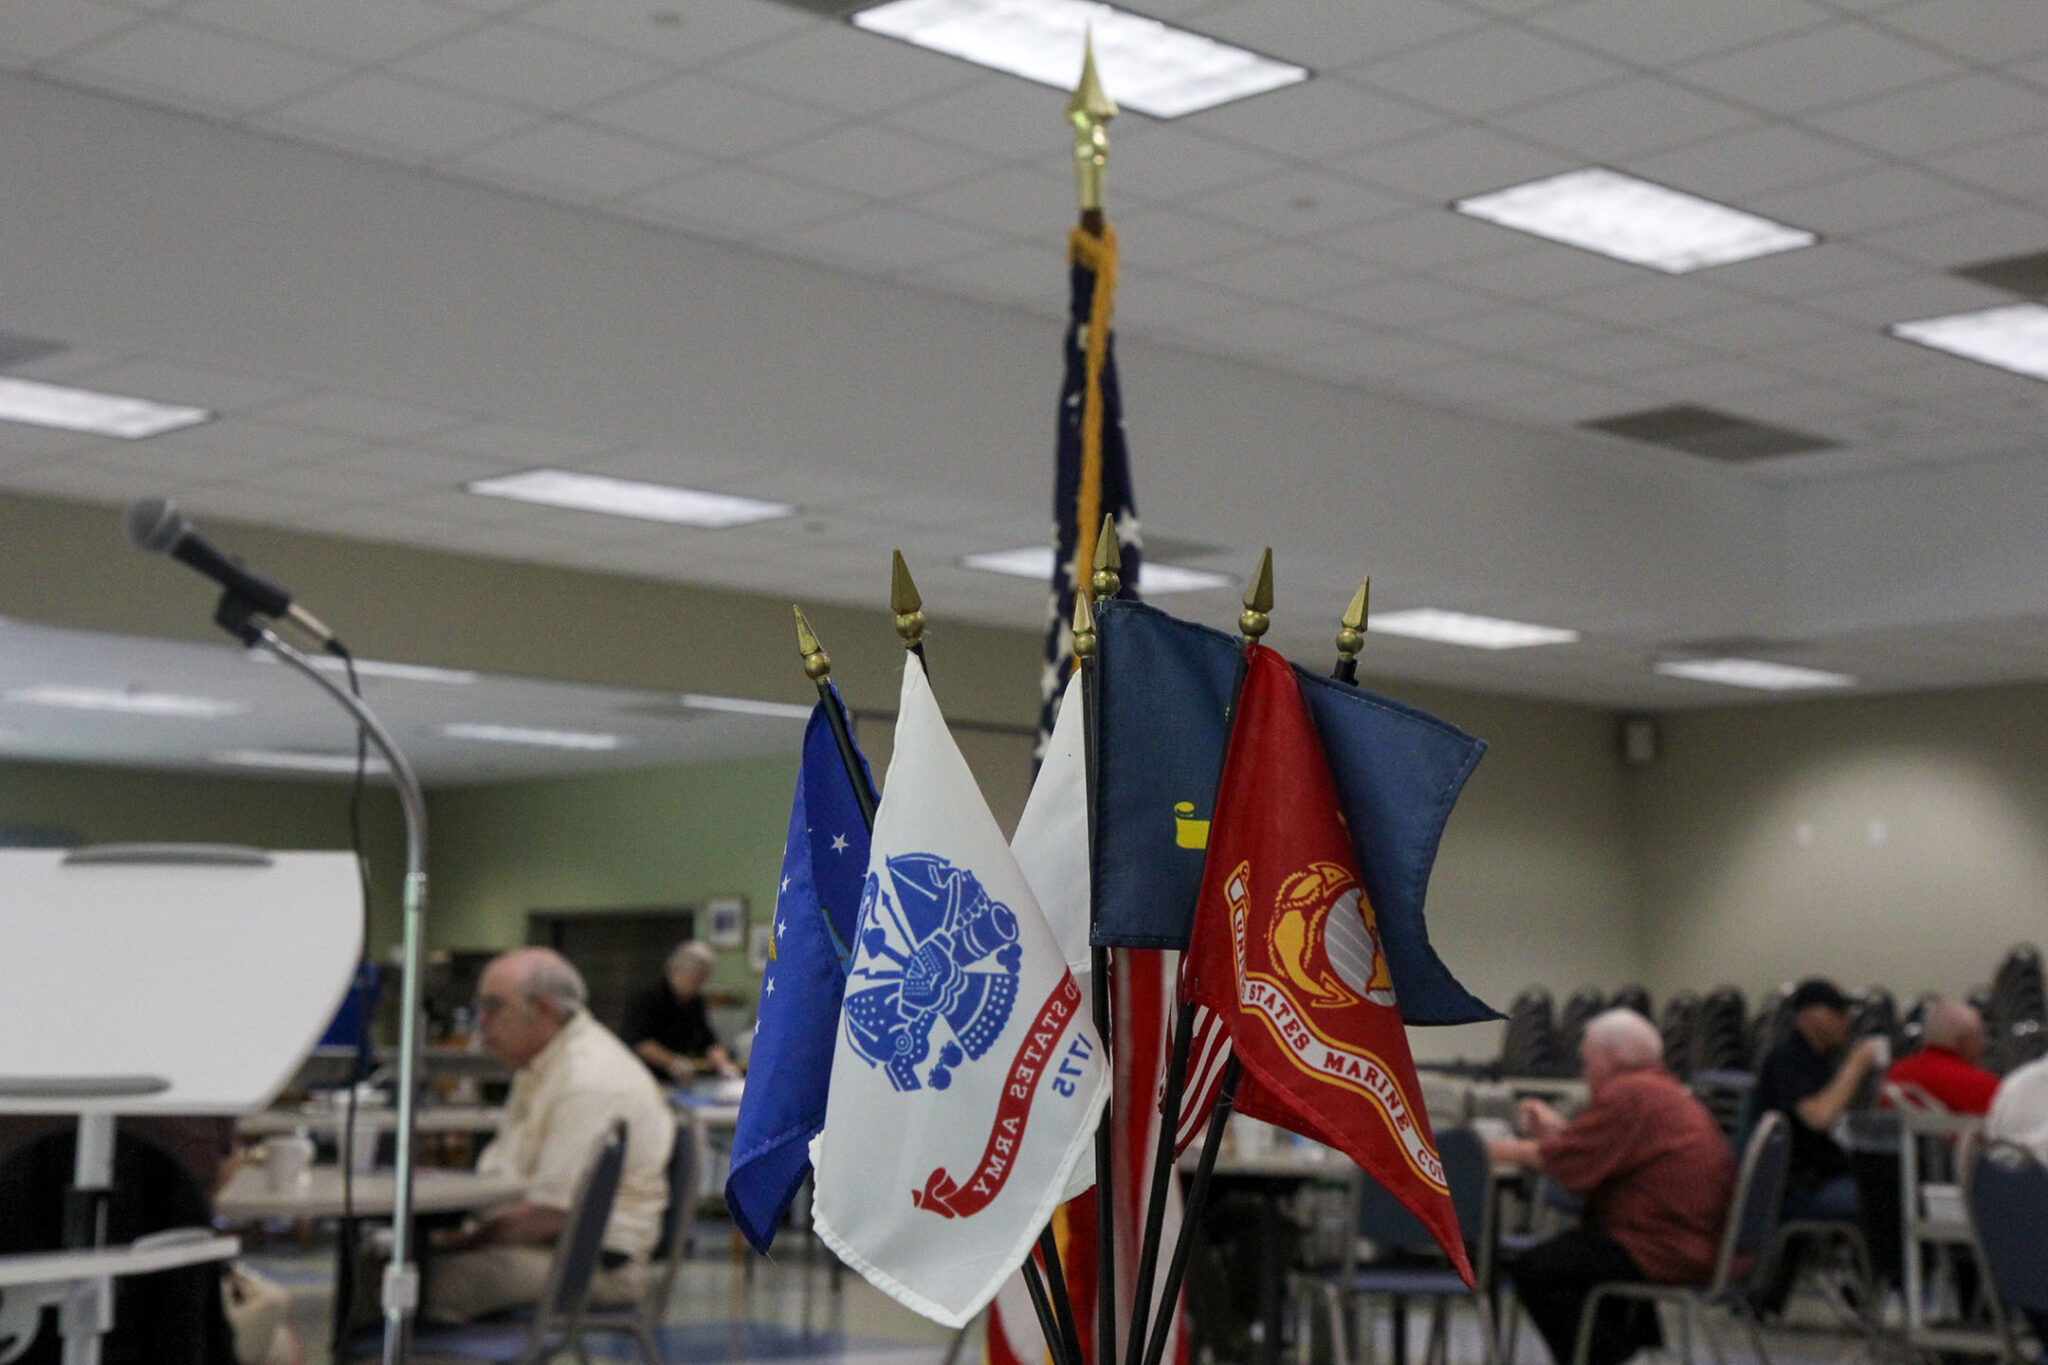 Veterans Breakfast at Senior Center Aug. 5